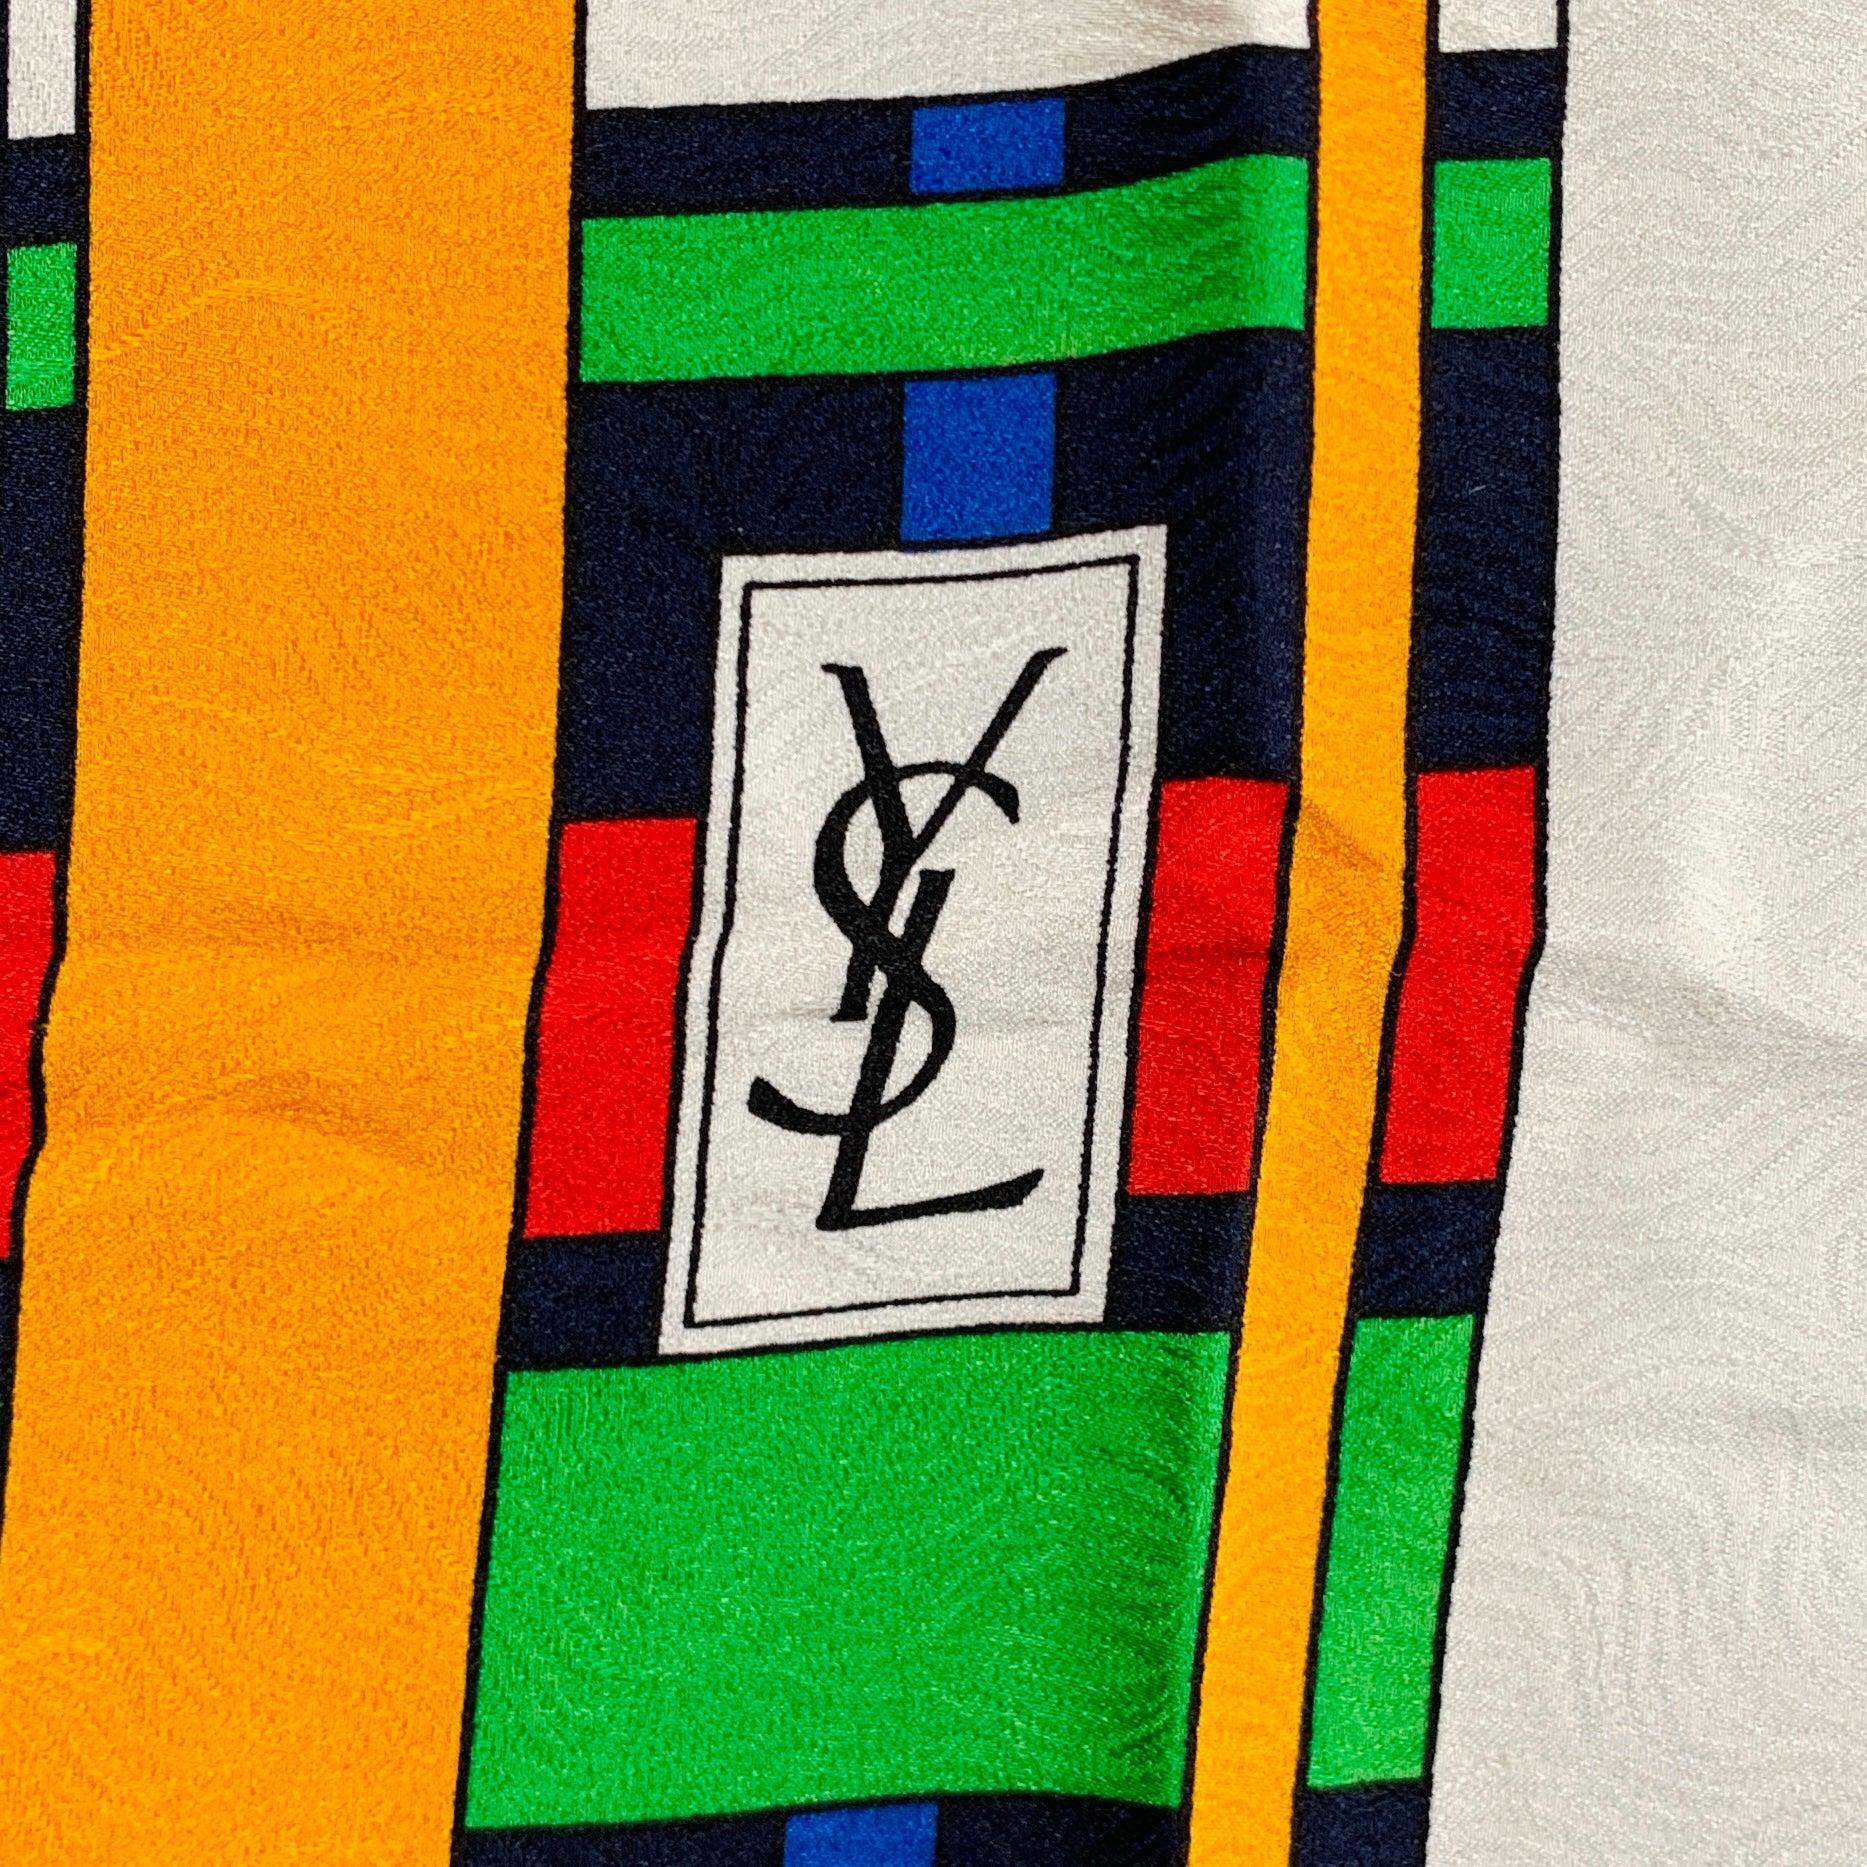 Écharpe vintage YVES SAINT LAURENT
en soie multicolore avec un motif de tissage et des bords roulés à la main. Fabriqué en France. Bon état d'usage. 

Mesures : 
  34 pouces  x 34 pouces 
  
  
 
Numéro de référence : 129001
Catégorie :